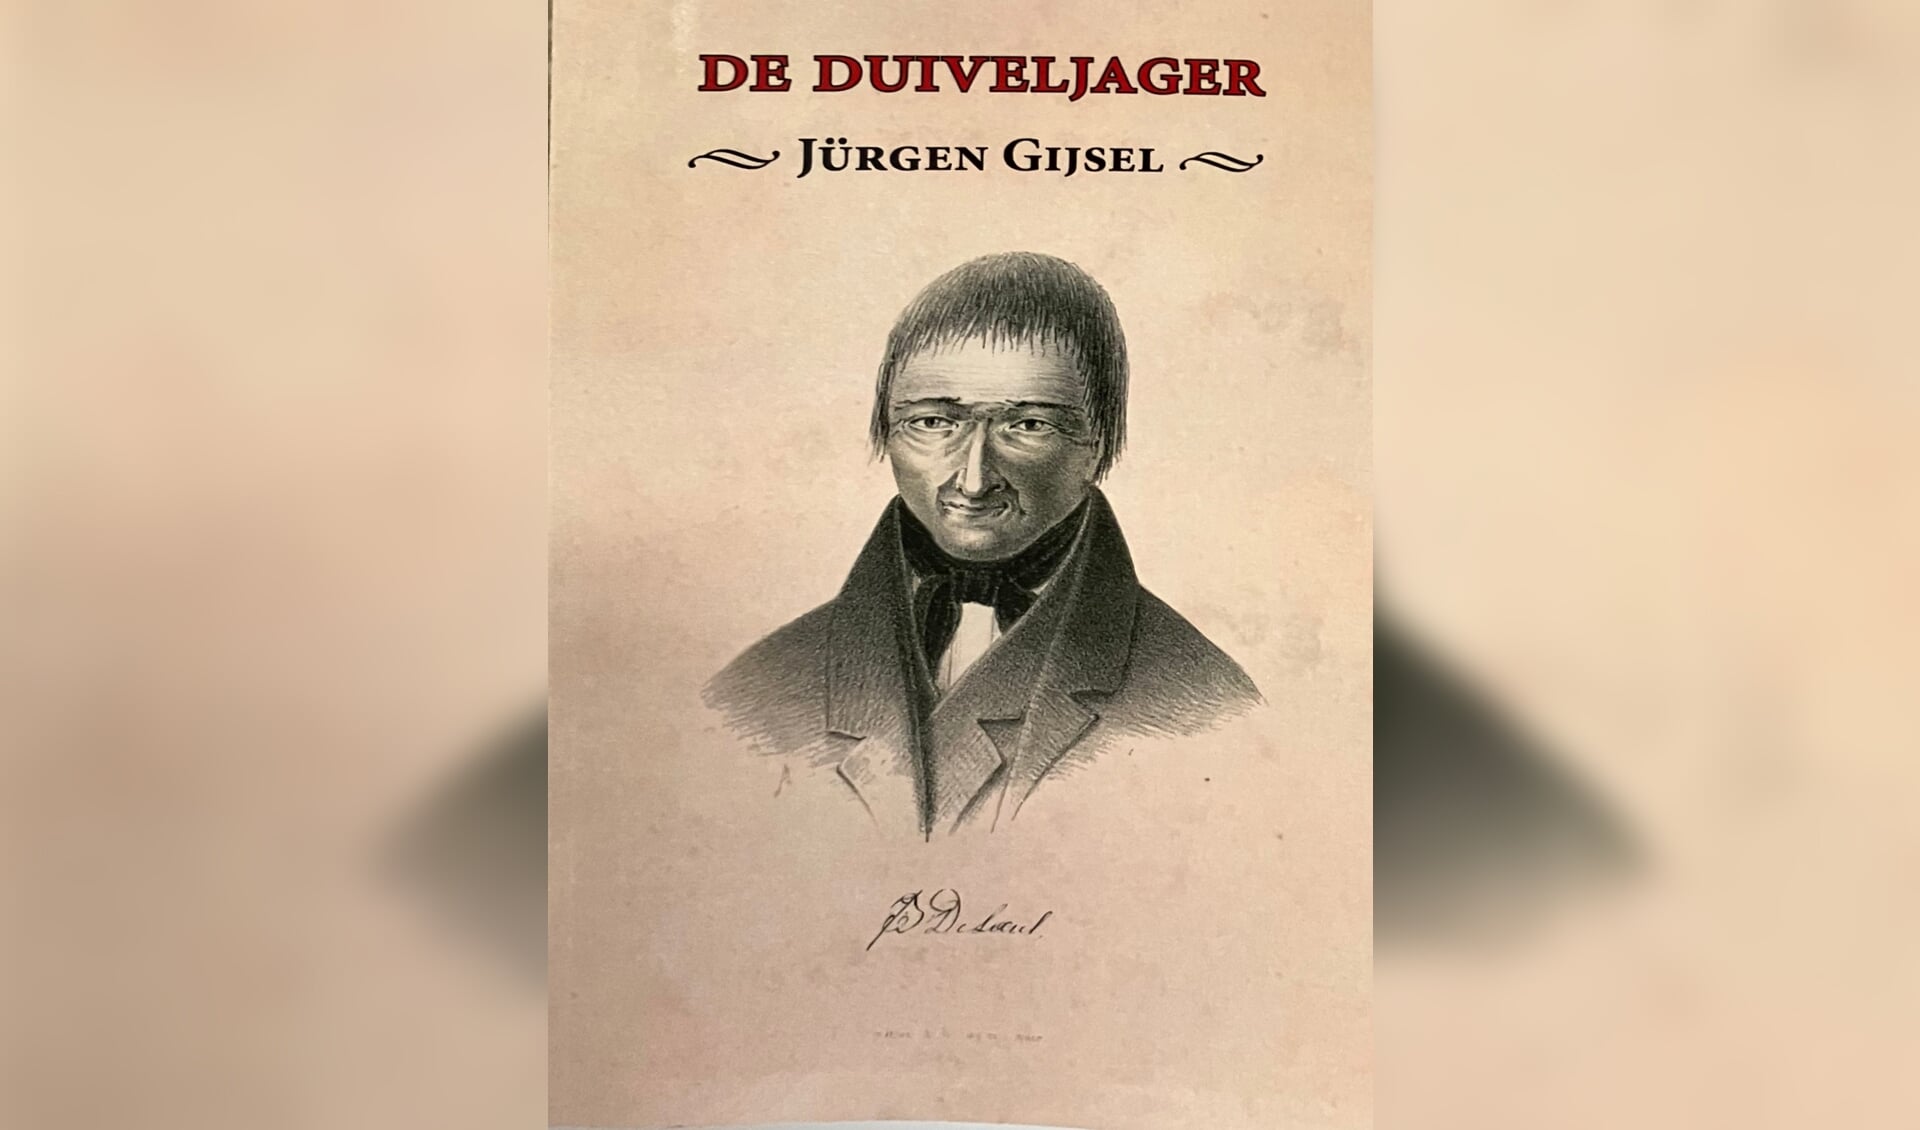 Jürgen Gijsel doet een gruwelijke streekgeschiedenis herleven in De Duiveljager.